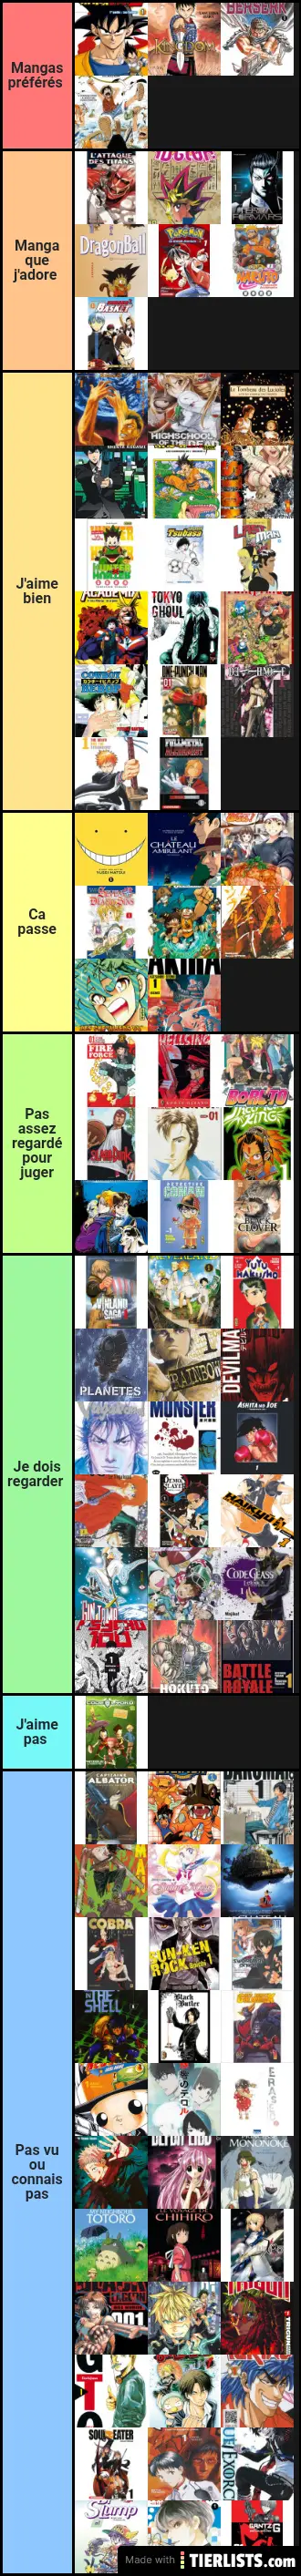 Anime and manga Romain